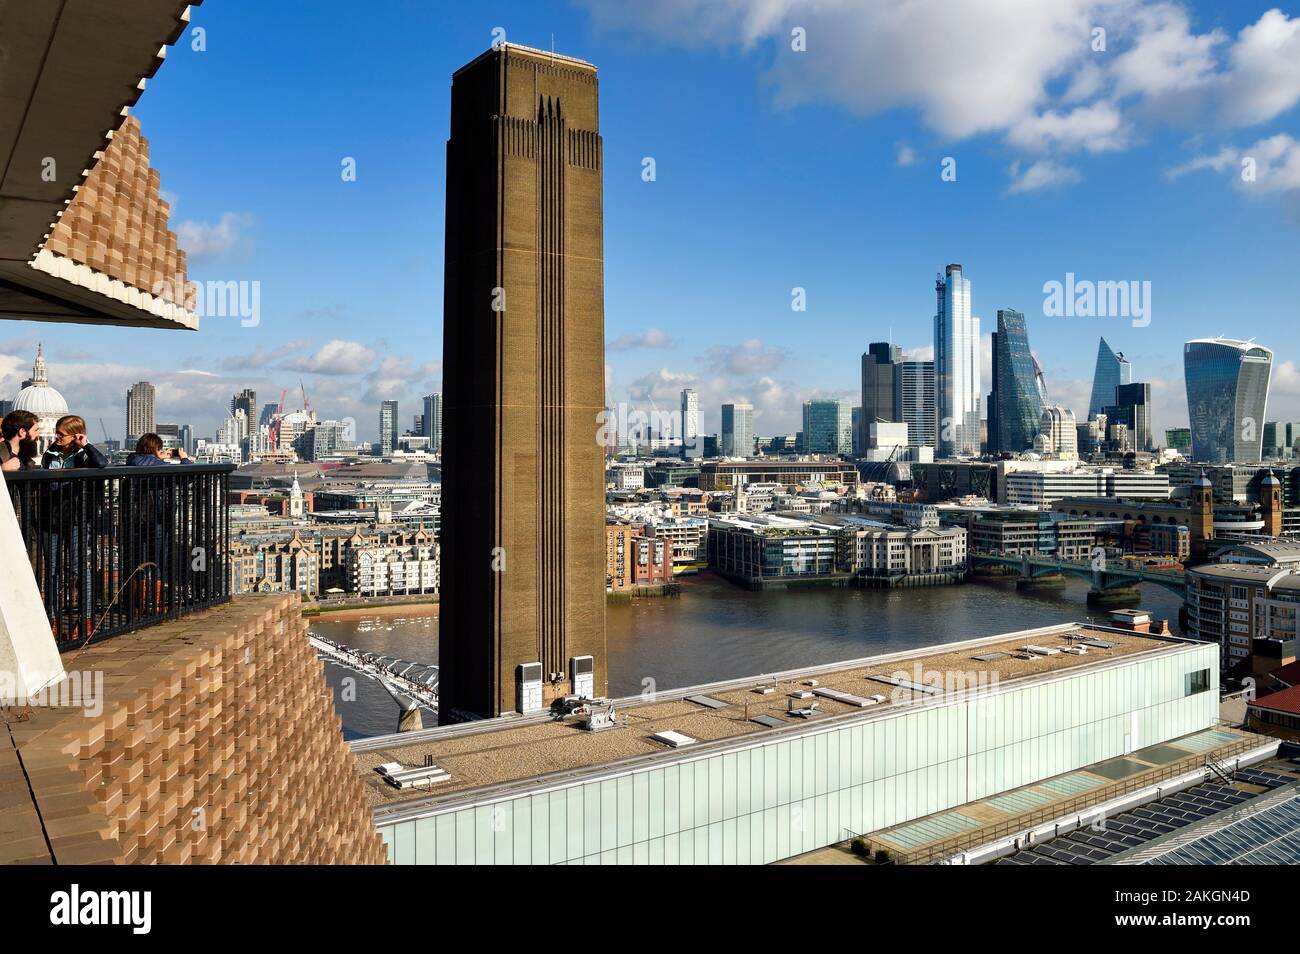 Vereinigtes Königreich, London, Southwark, Schalter Haus Terrasse in der Tate Modern am Rande der Themse und den Wolkenkratzern der Stadt mit den 20 Fenchurch Street nicknamed die Walkie-Talkie-entworfen von dem Architekten Rafael Vinoly auf der rechten Seite Stockfoto